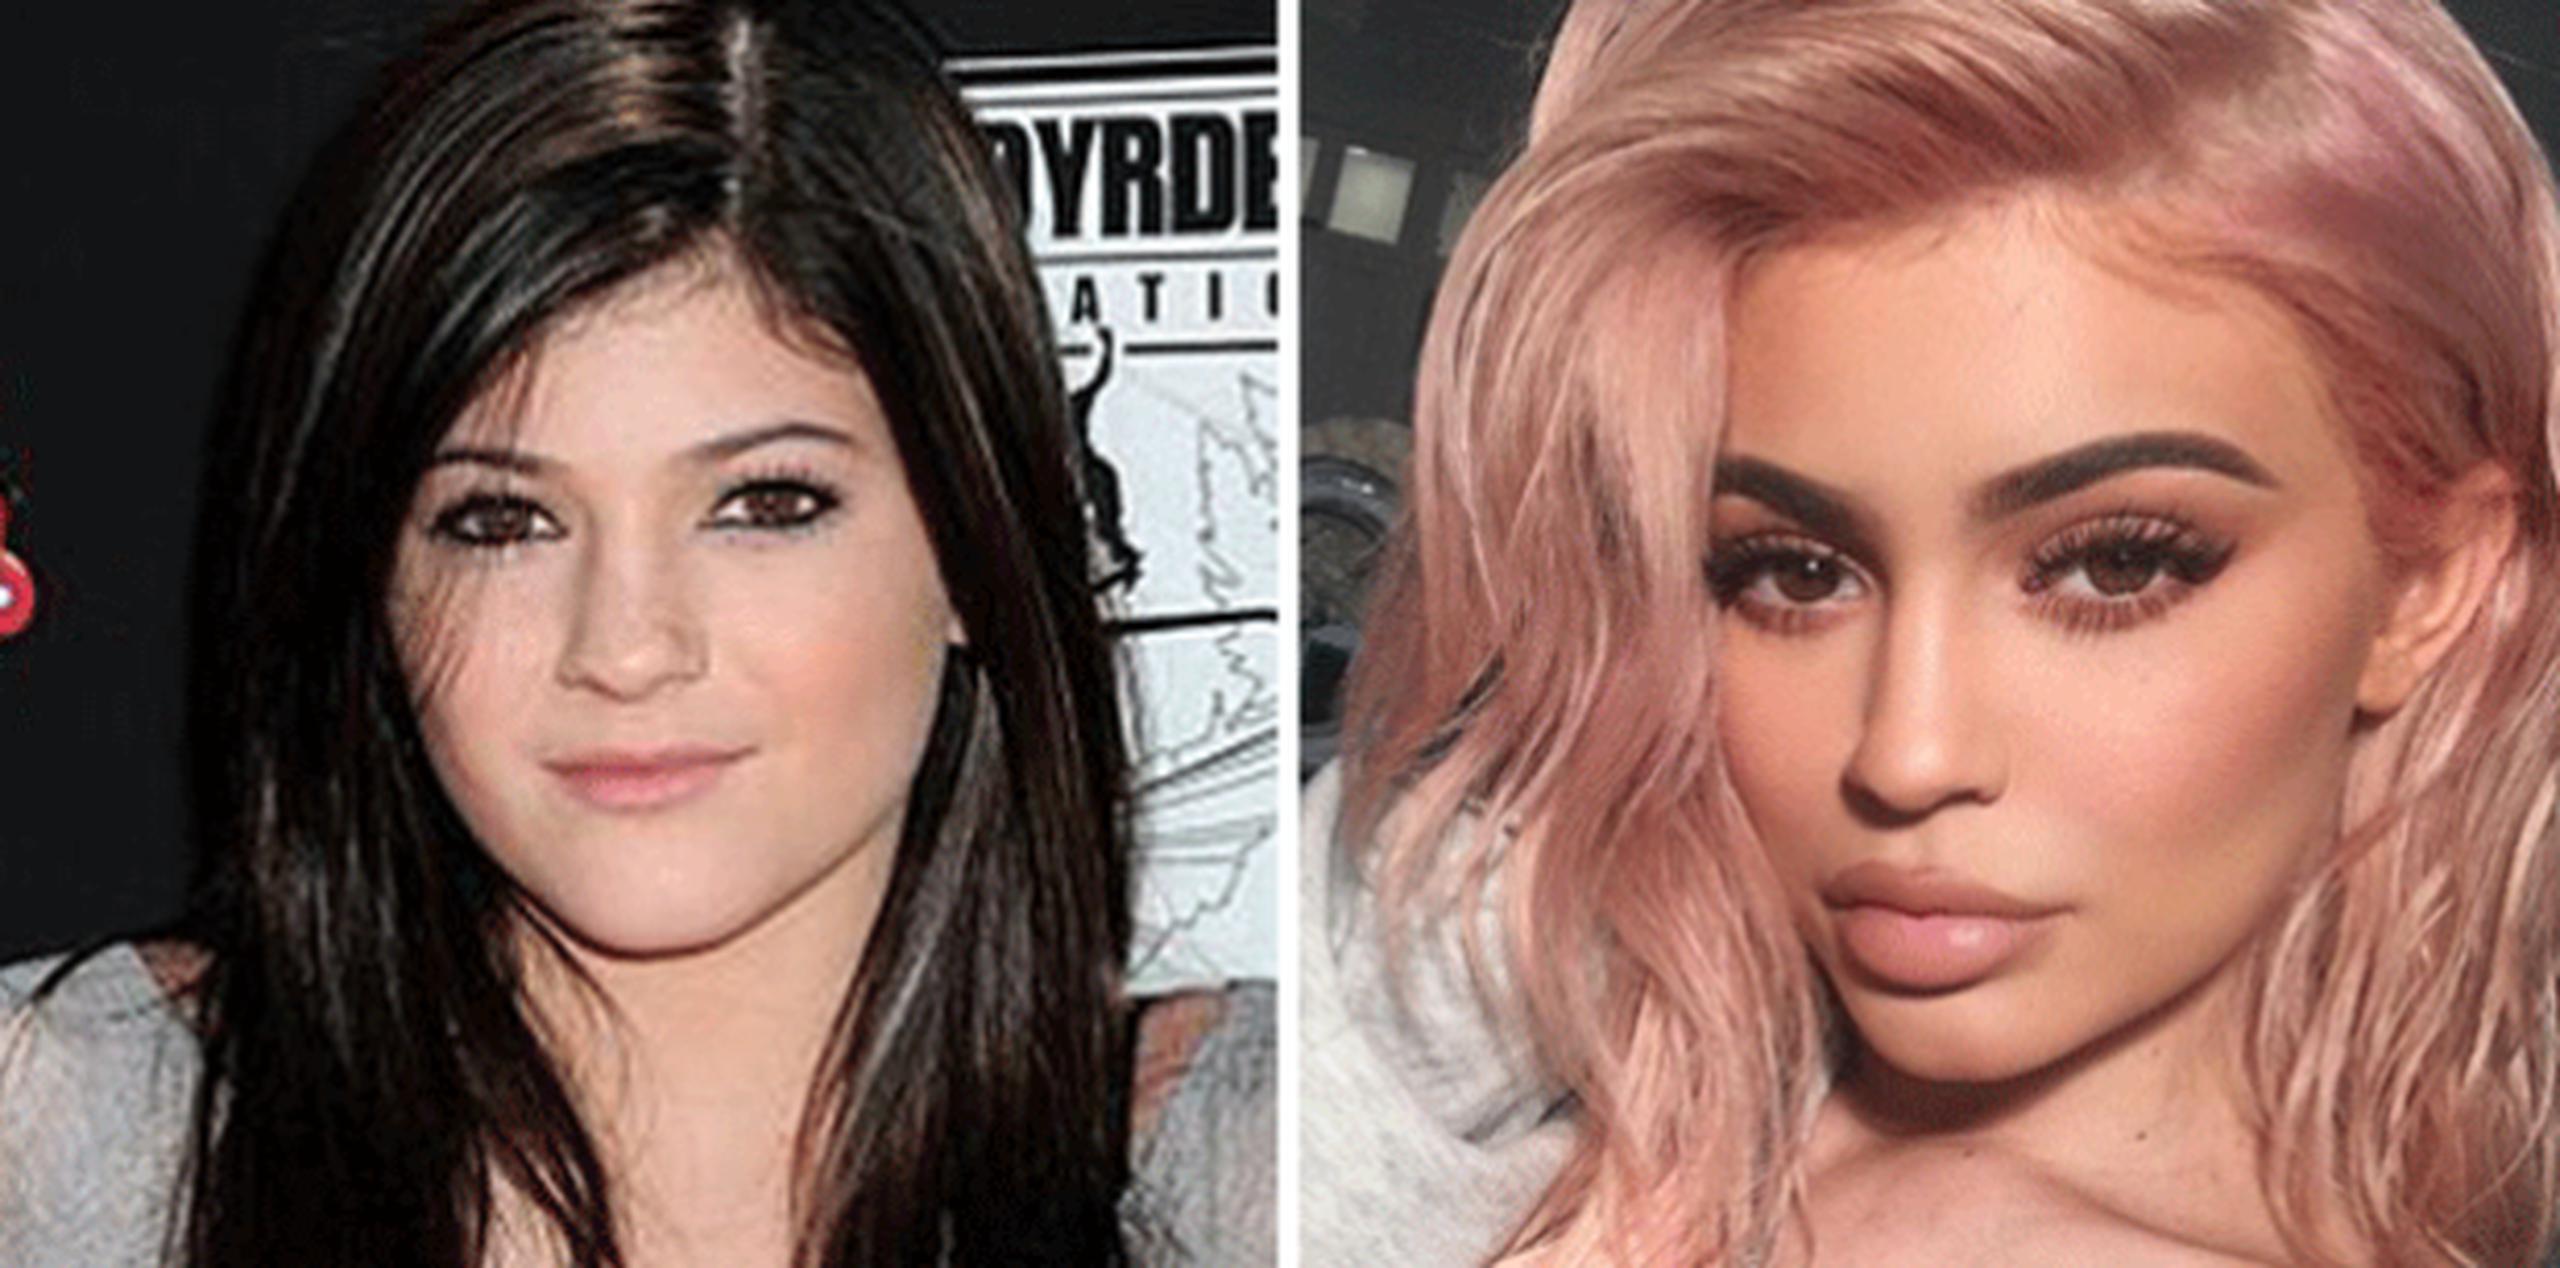 Por si acaso, la imagen de la izquierda y la de la derecha, son de la misma persona: Kylie Jenner. (Archivo / Instragram)